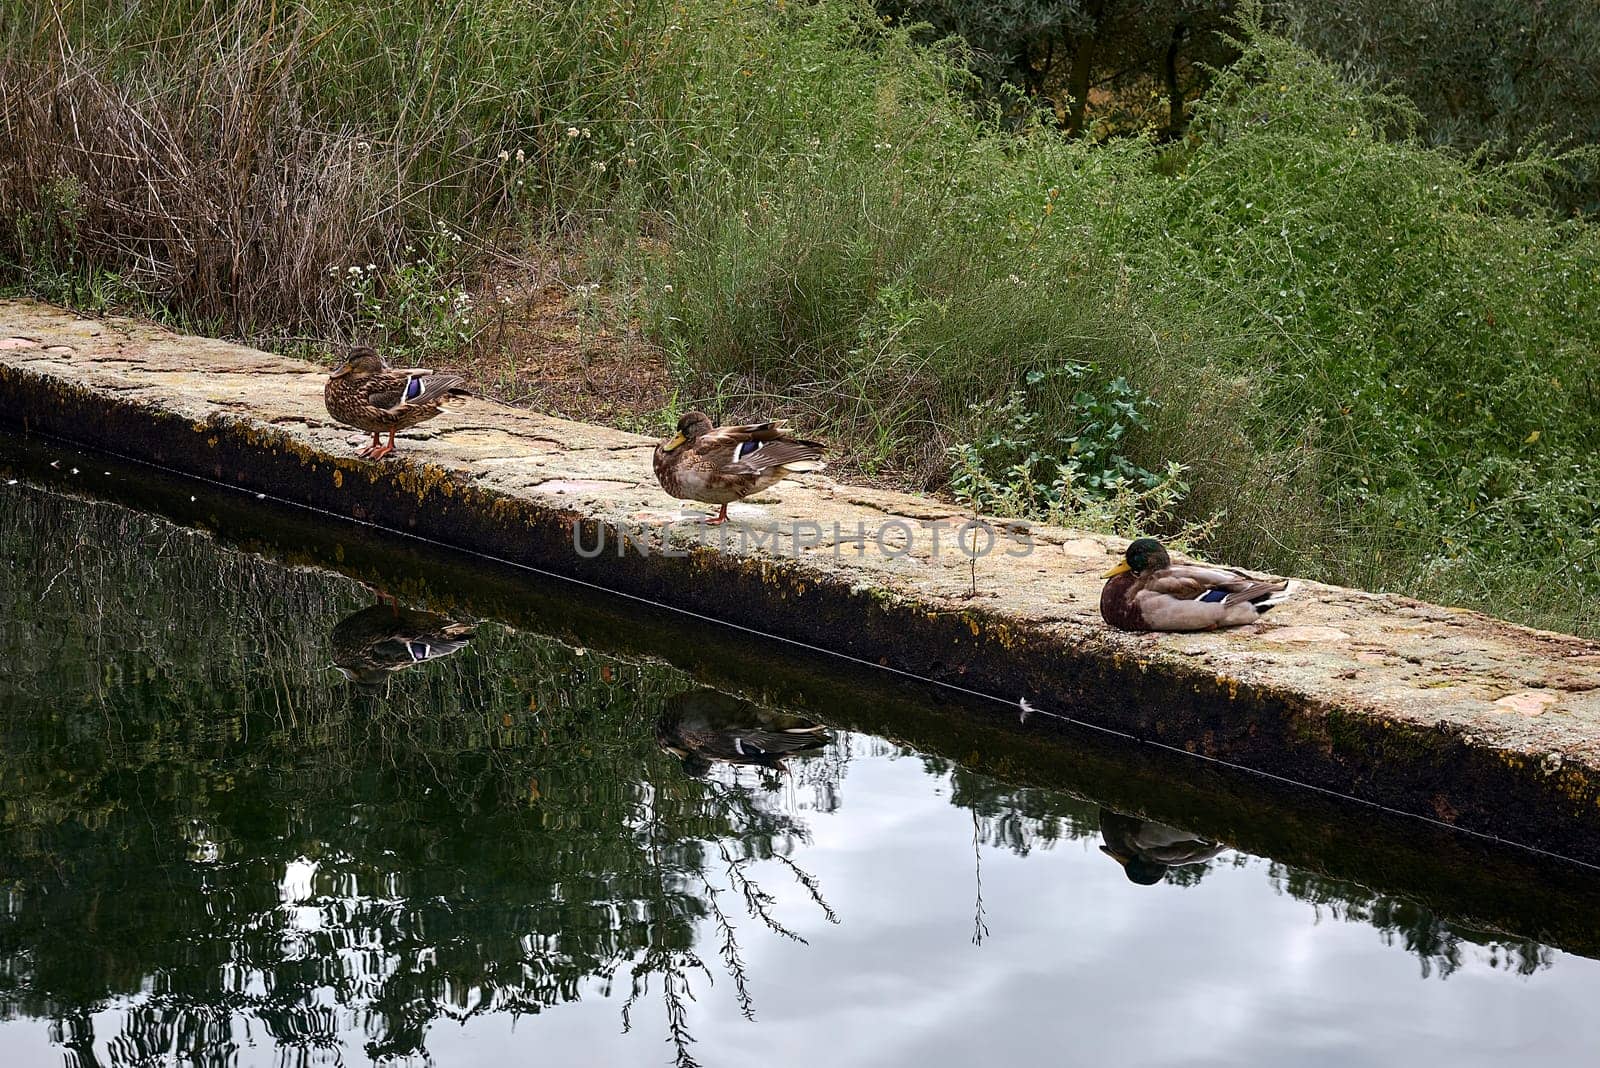 Three ducks resting on a stone wall by raul_ruiz